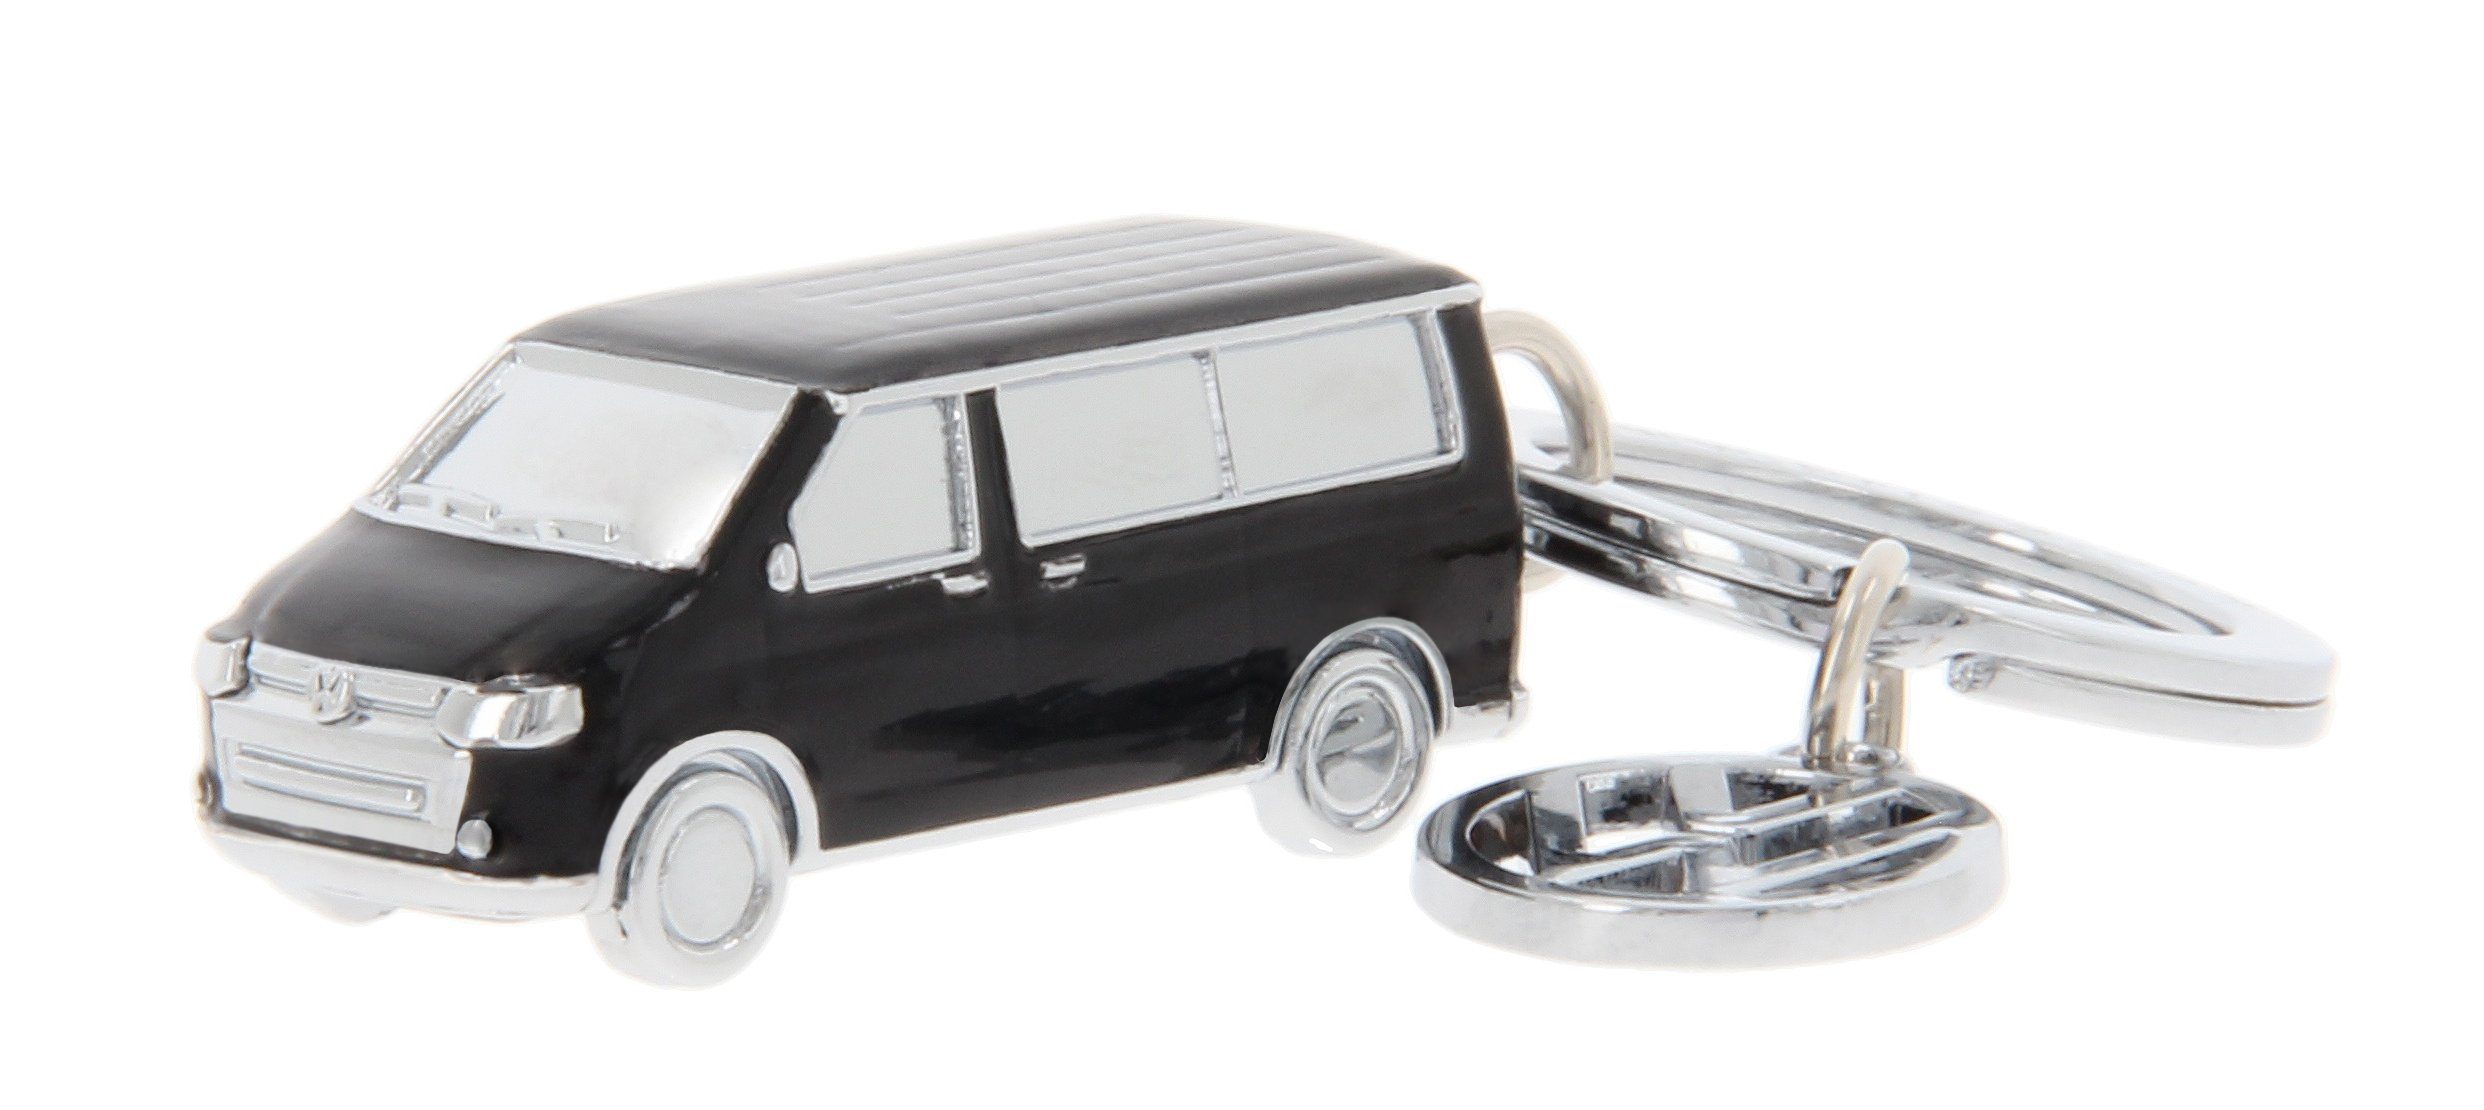 BRISA VW Collection - Volkswagen Schlüssel-Überzug-Kappen zur  Identifizierung von Schlüsseln im T1 Bulli Bus Design (3ER Set)